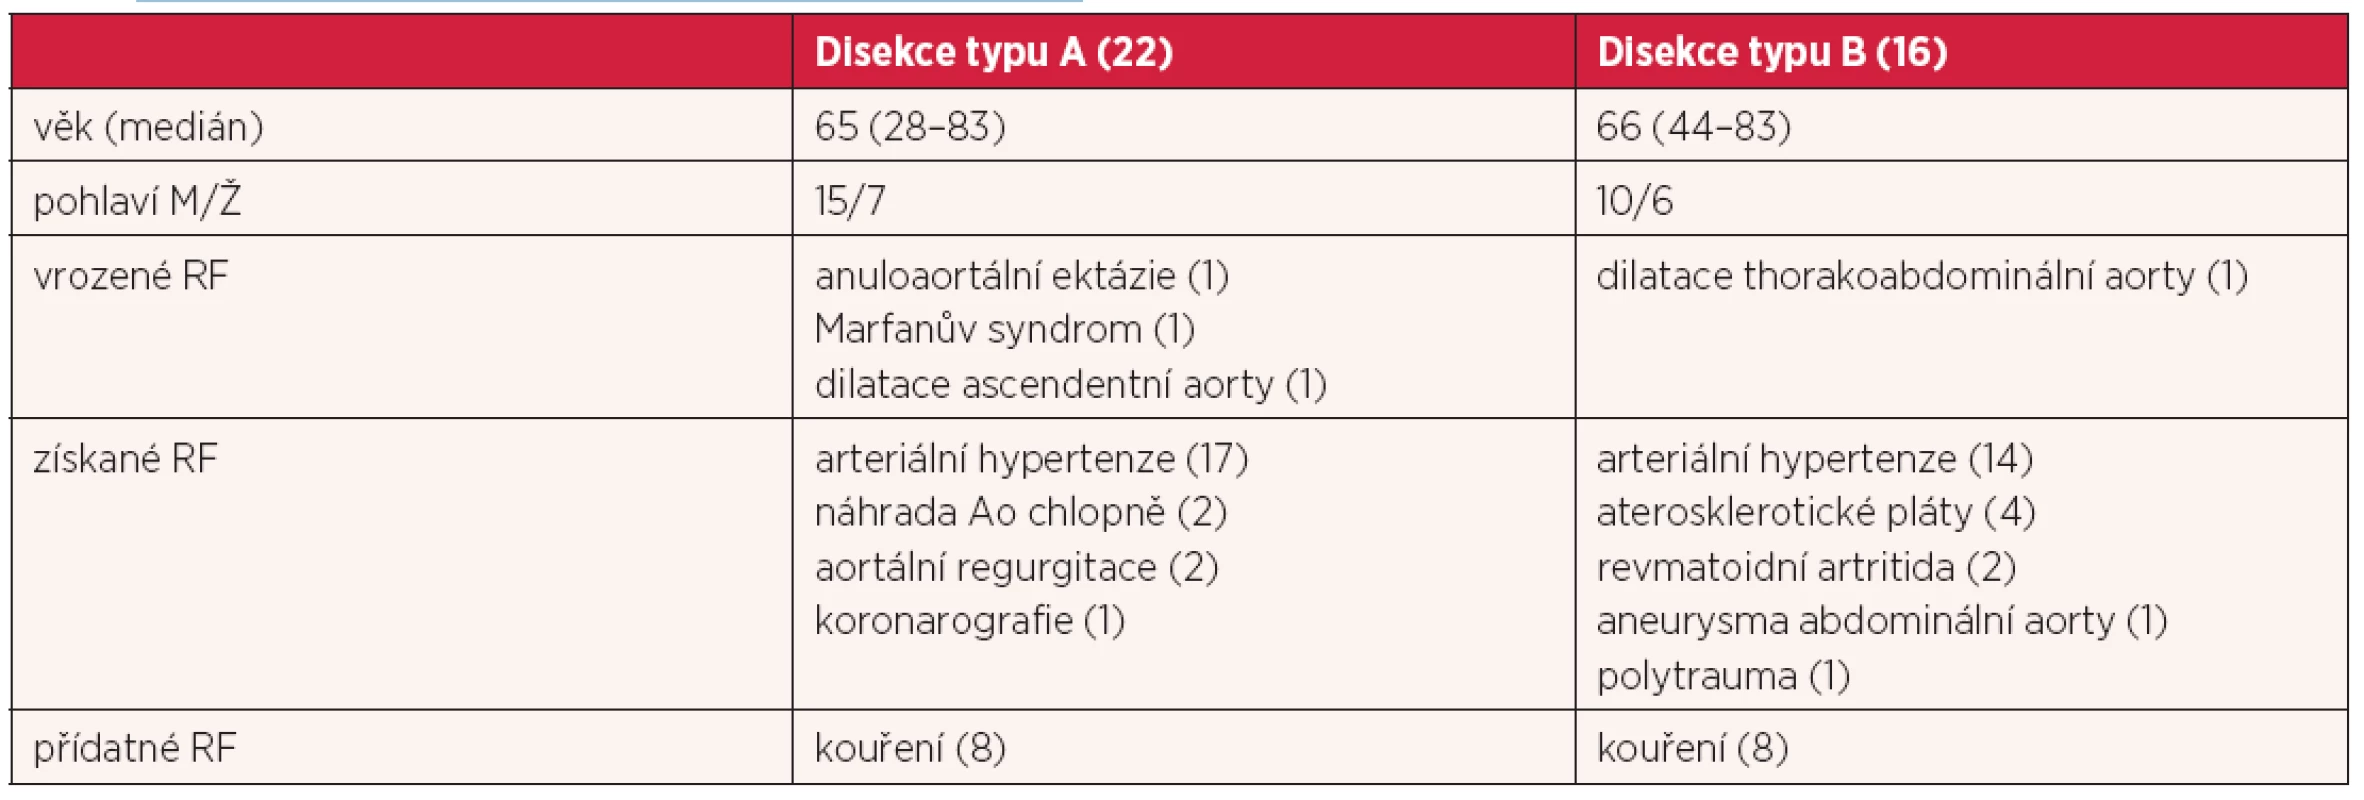 Rizikové faktory (rf) souboru nemocných s disekcí aorty